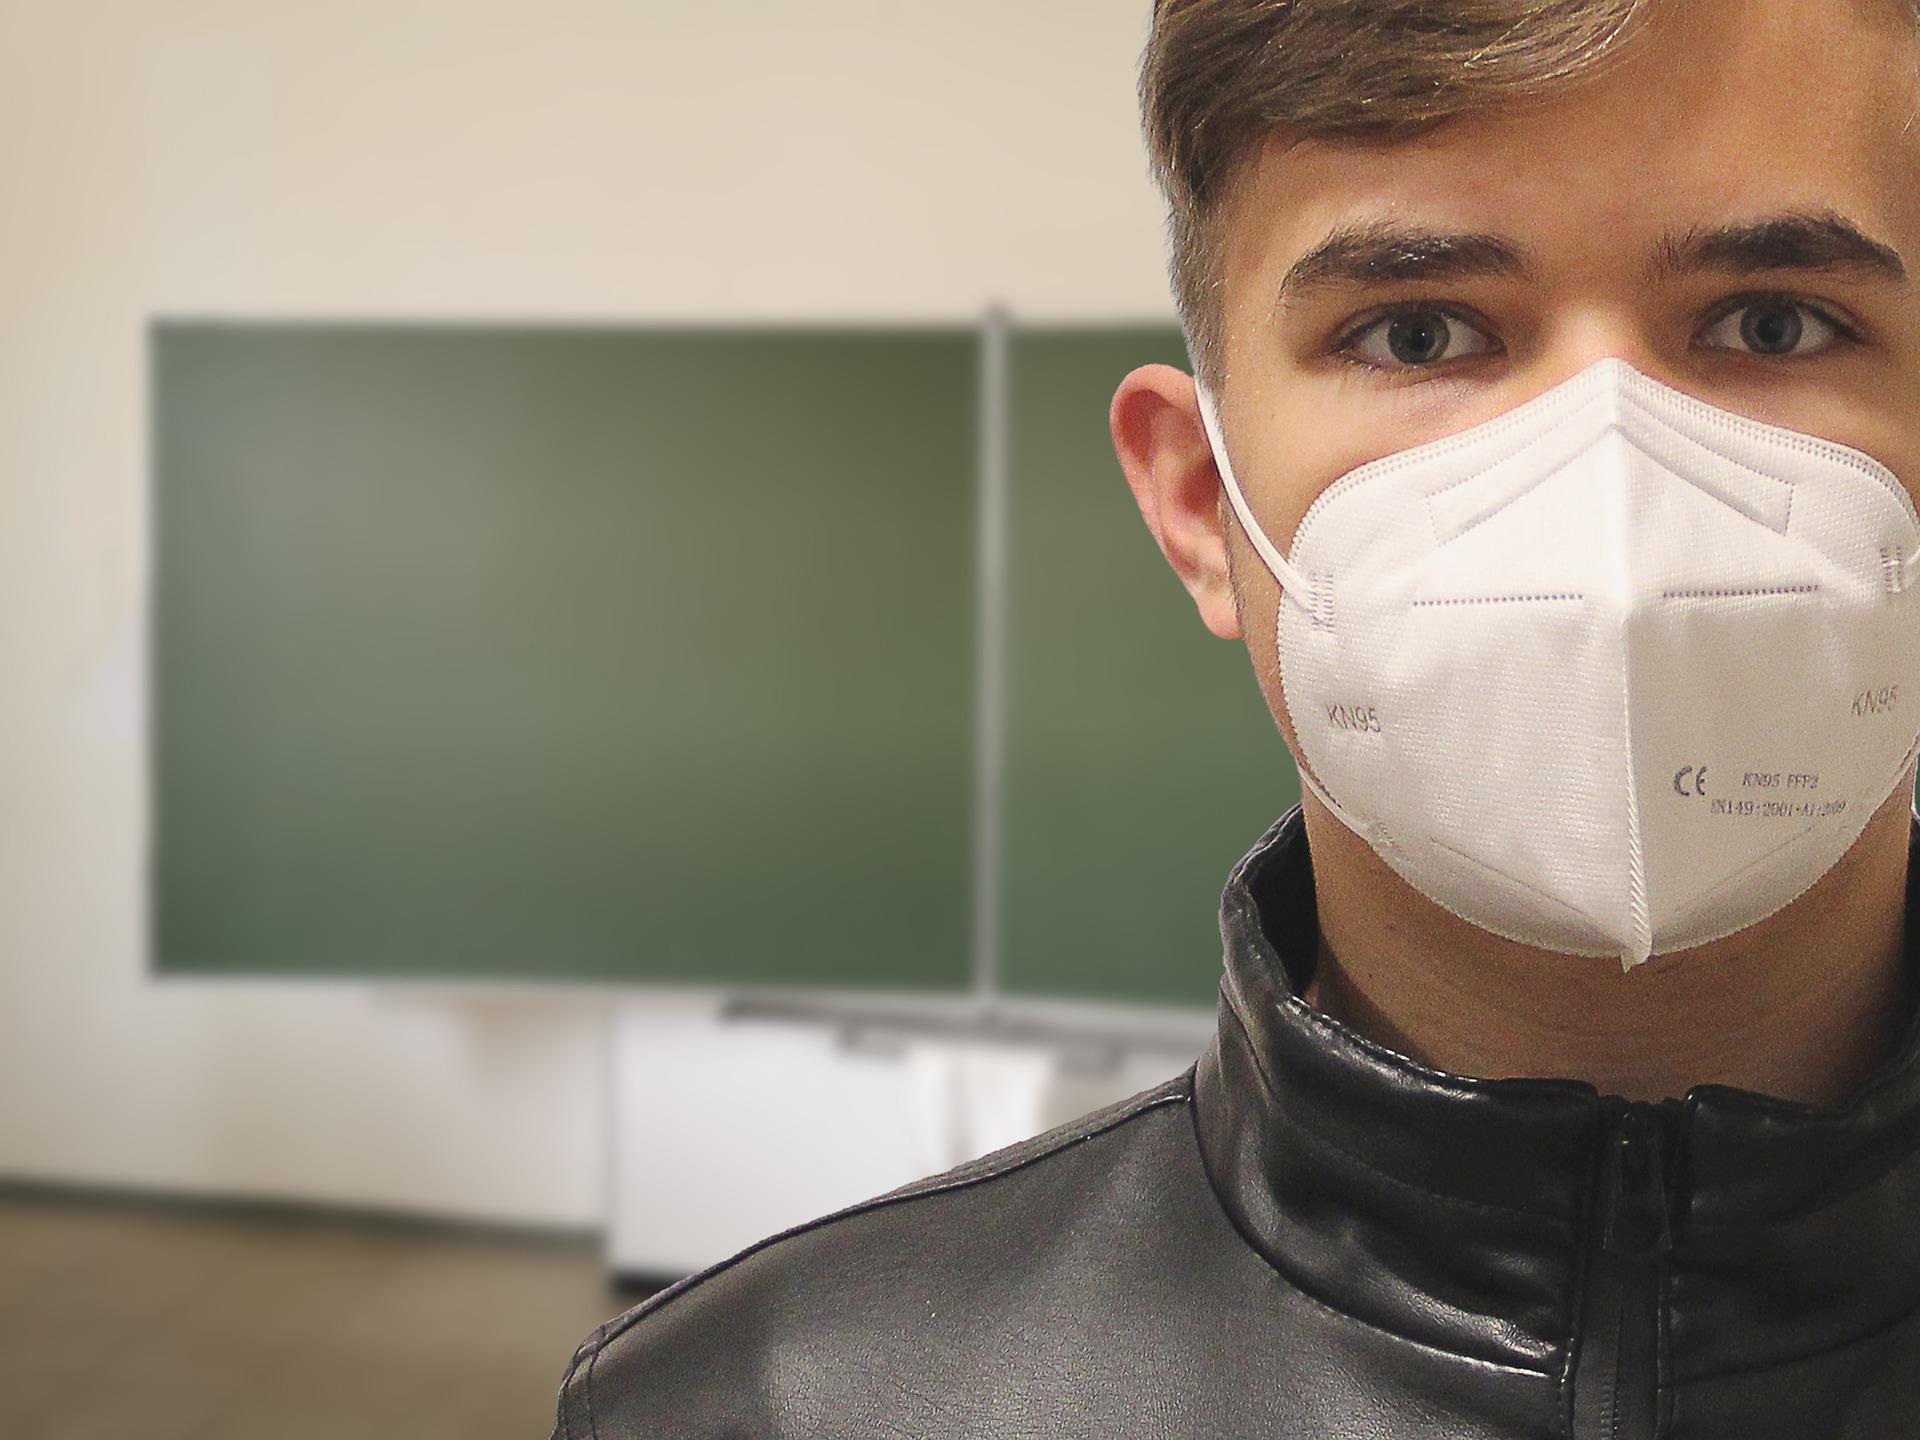 Com alta de Covid, cidades de SP recomendam uso de máscara em escolas